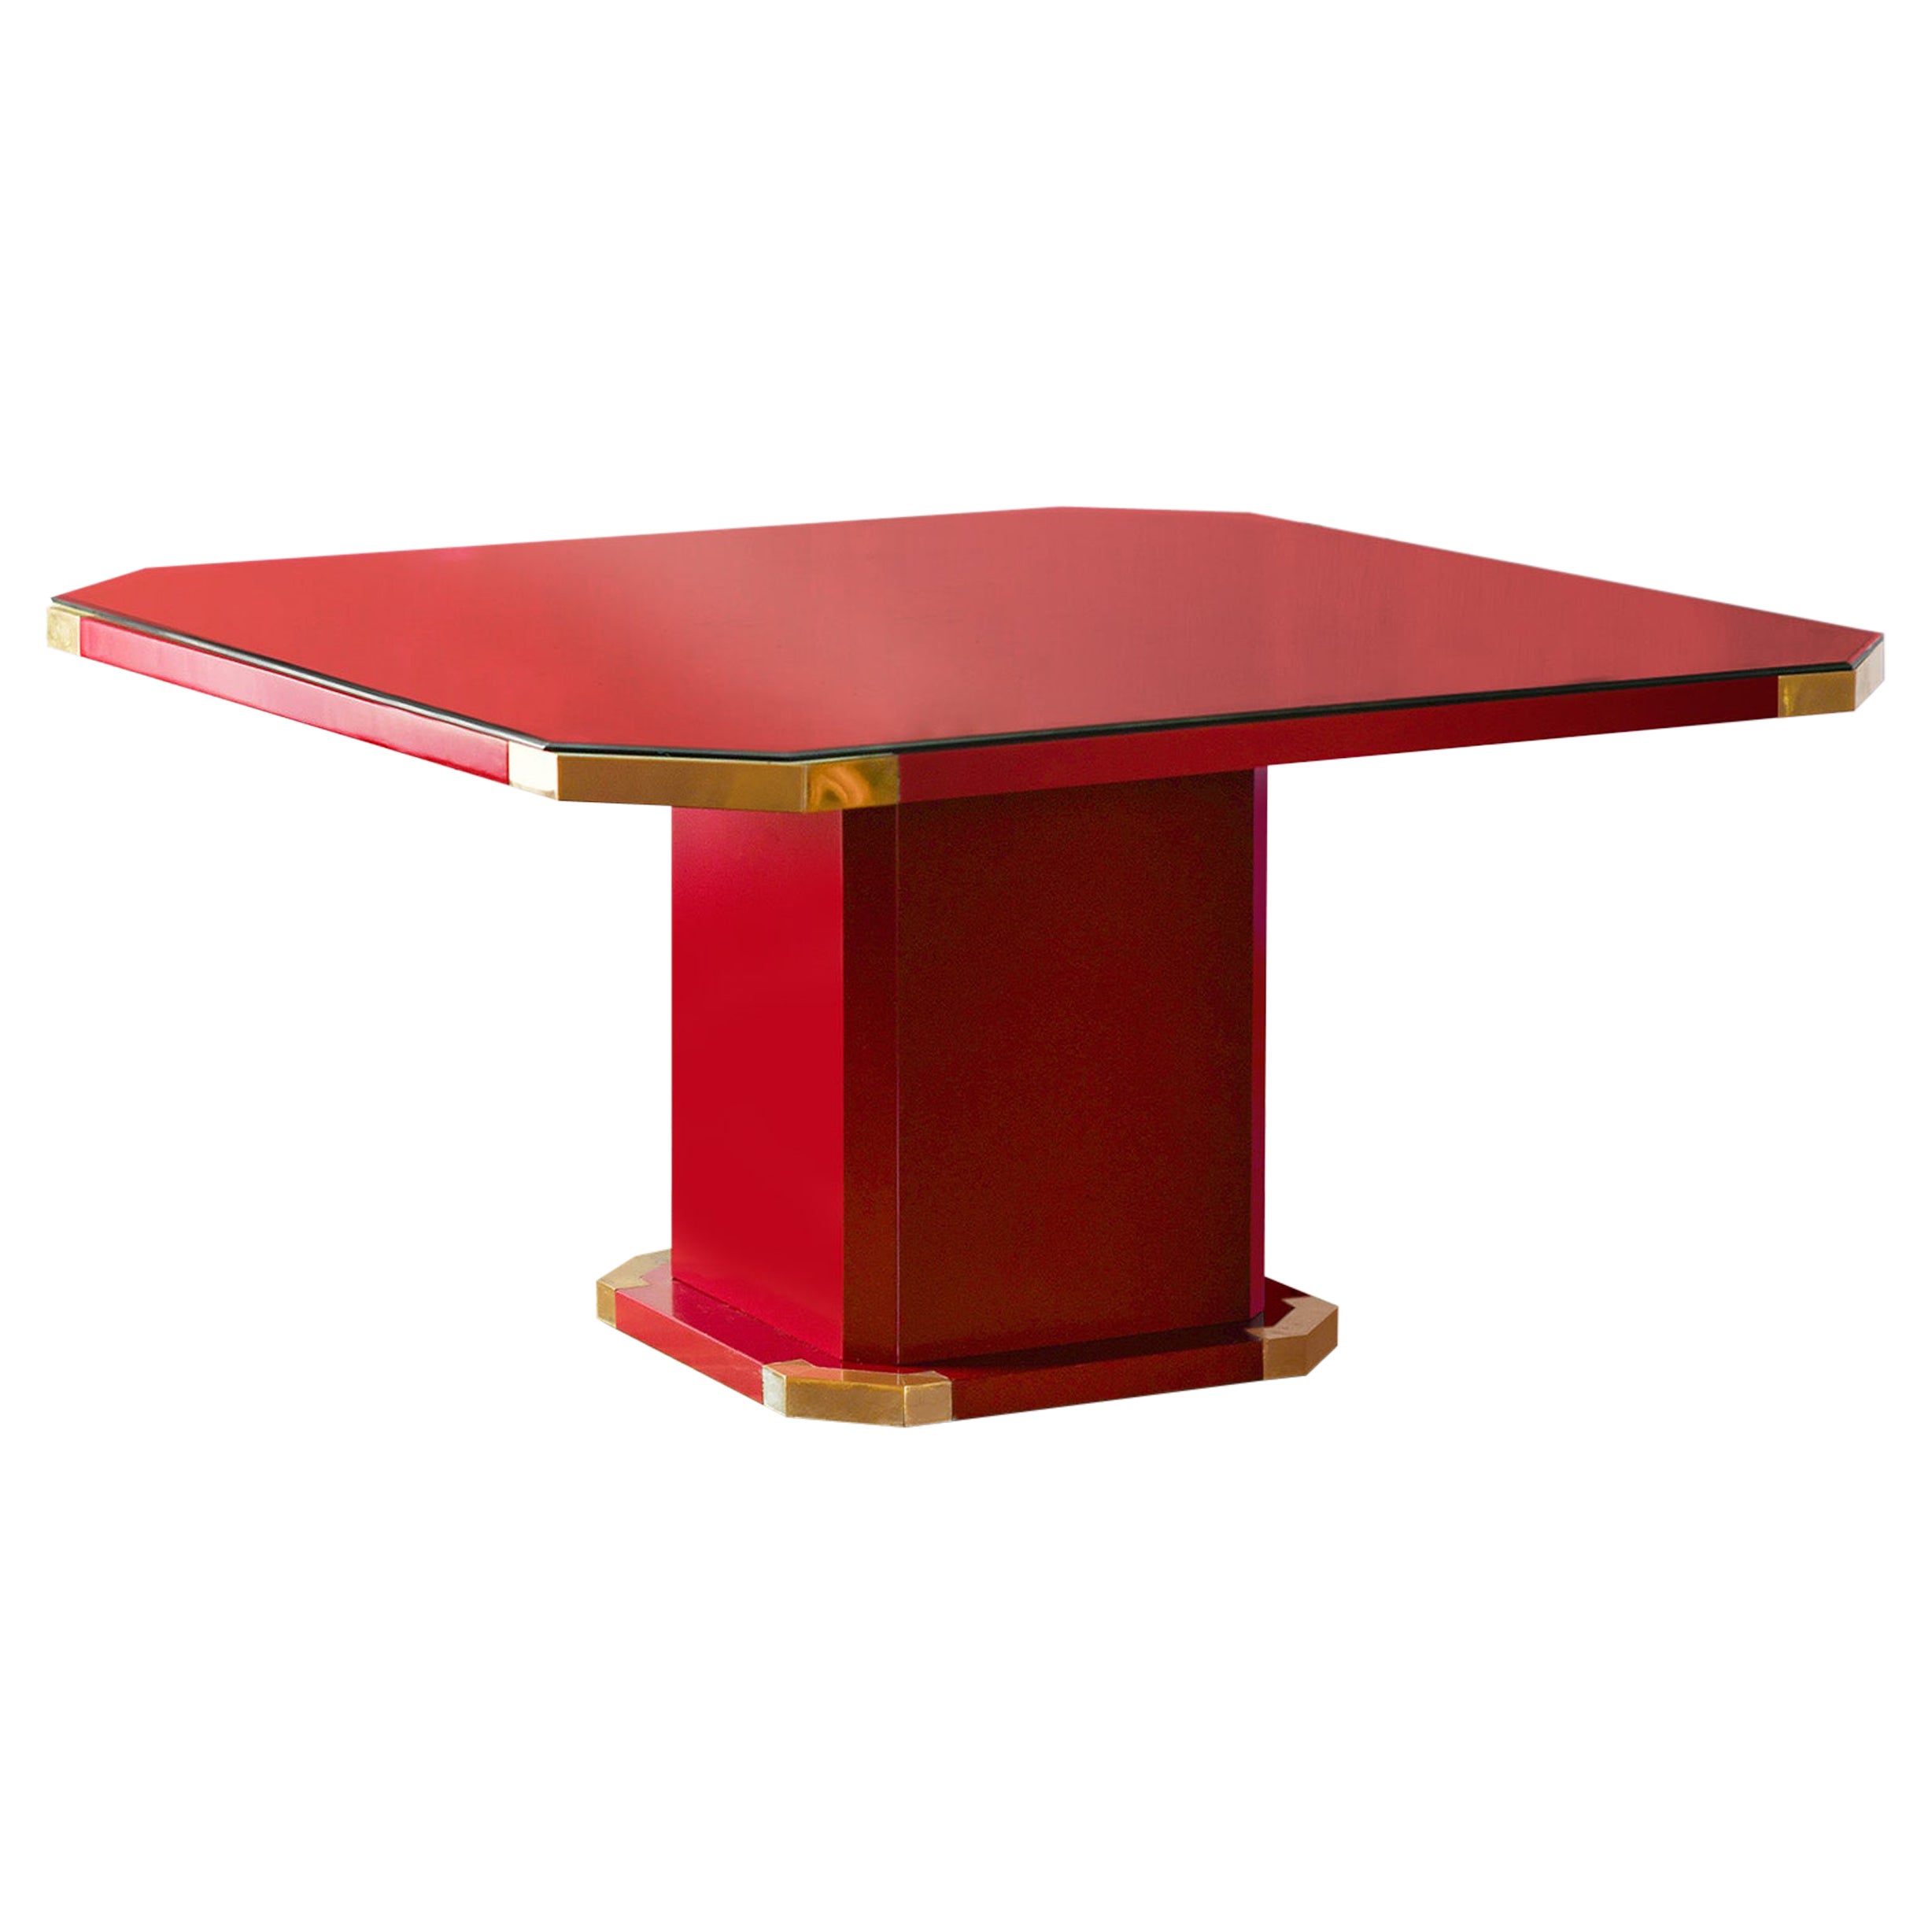 Sechseckiger rot lackierter chinesischer China China-Tisch mit Messingdetails und geschliffenem Kristallregal